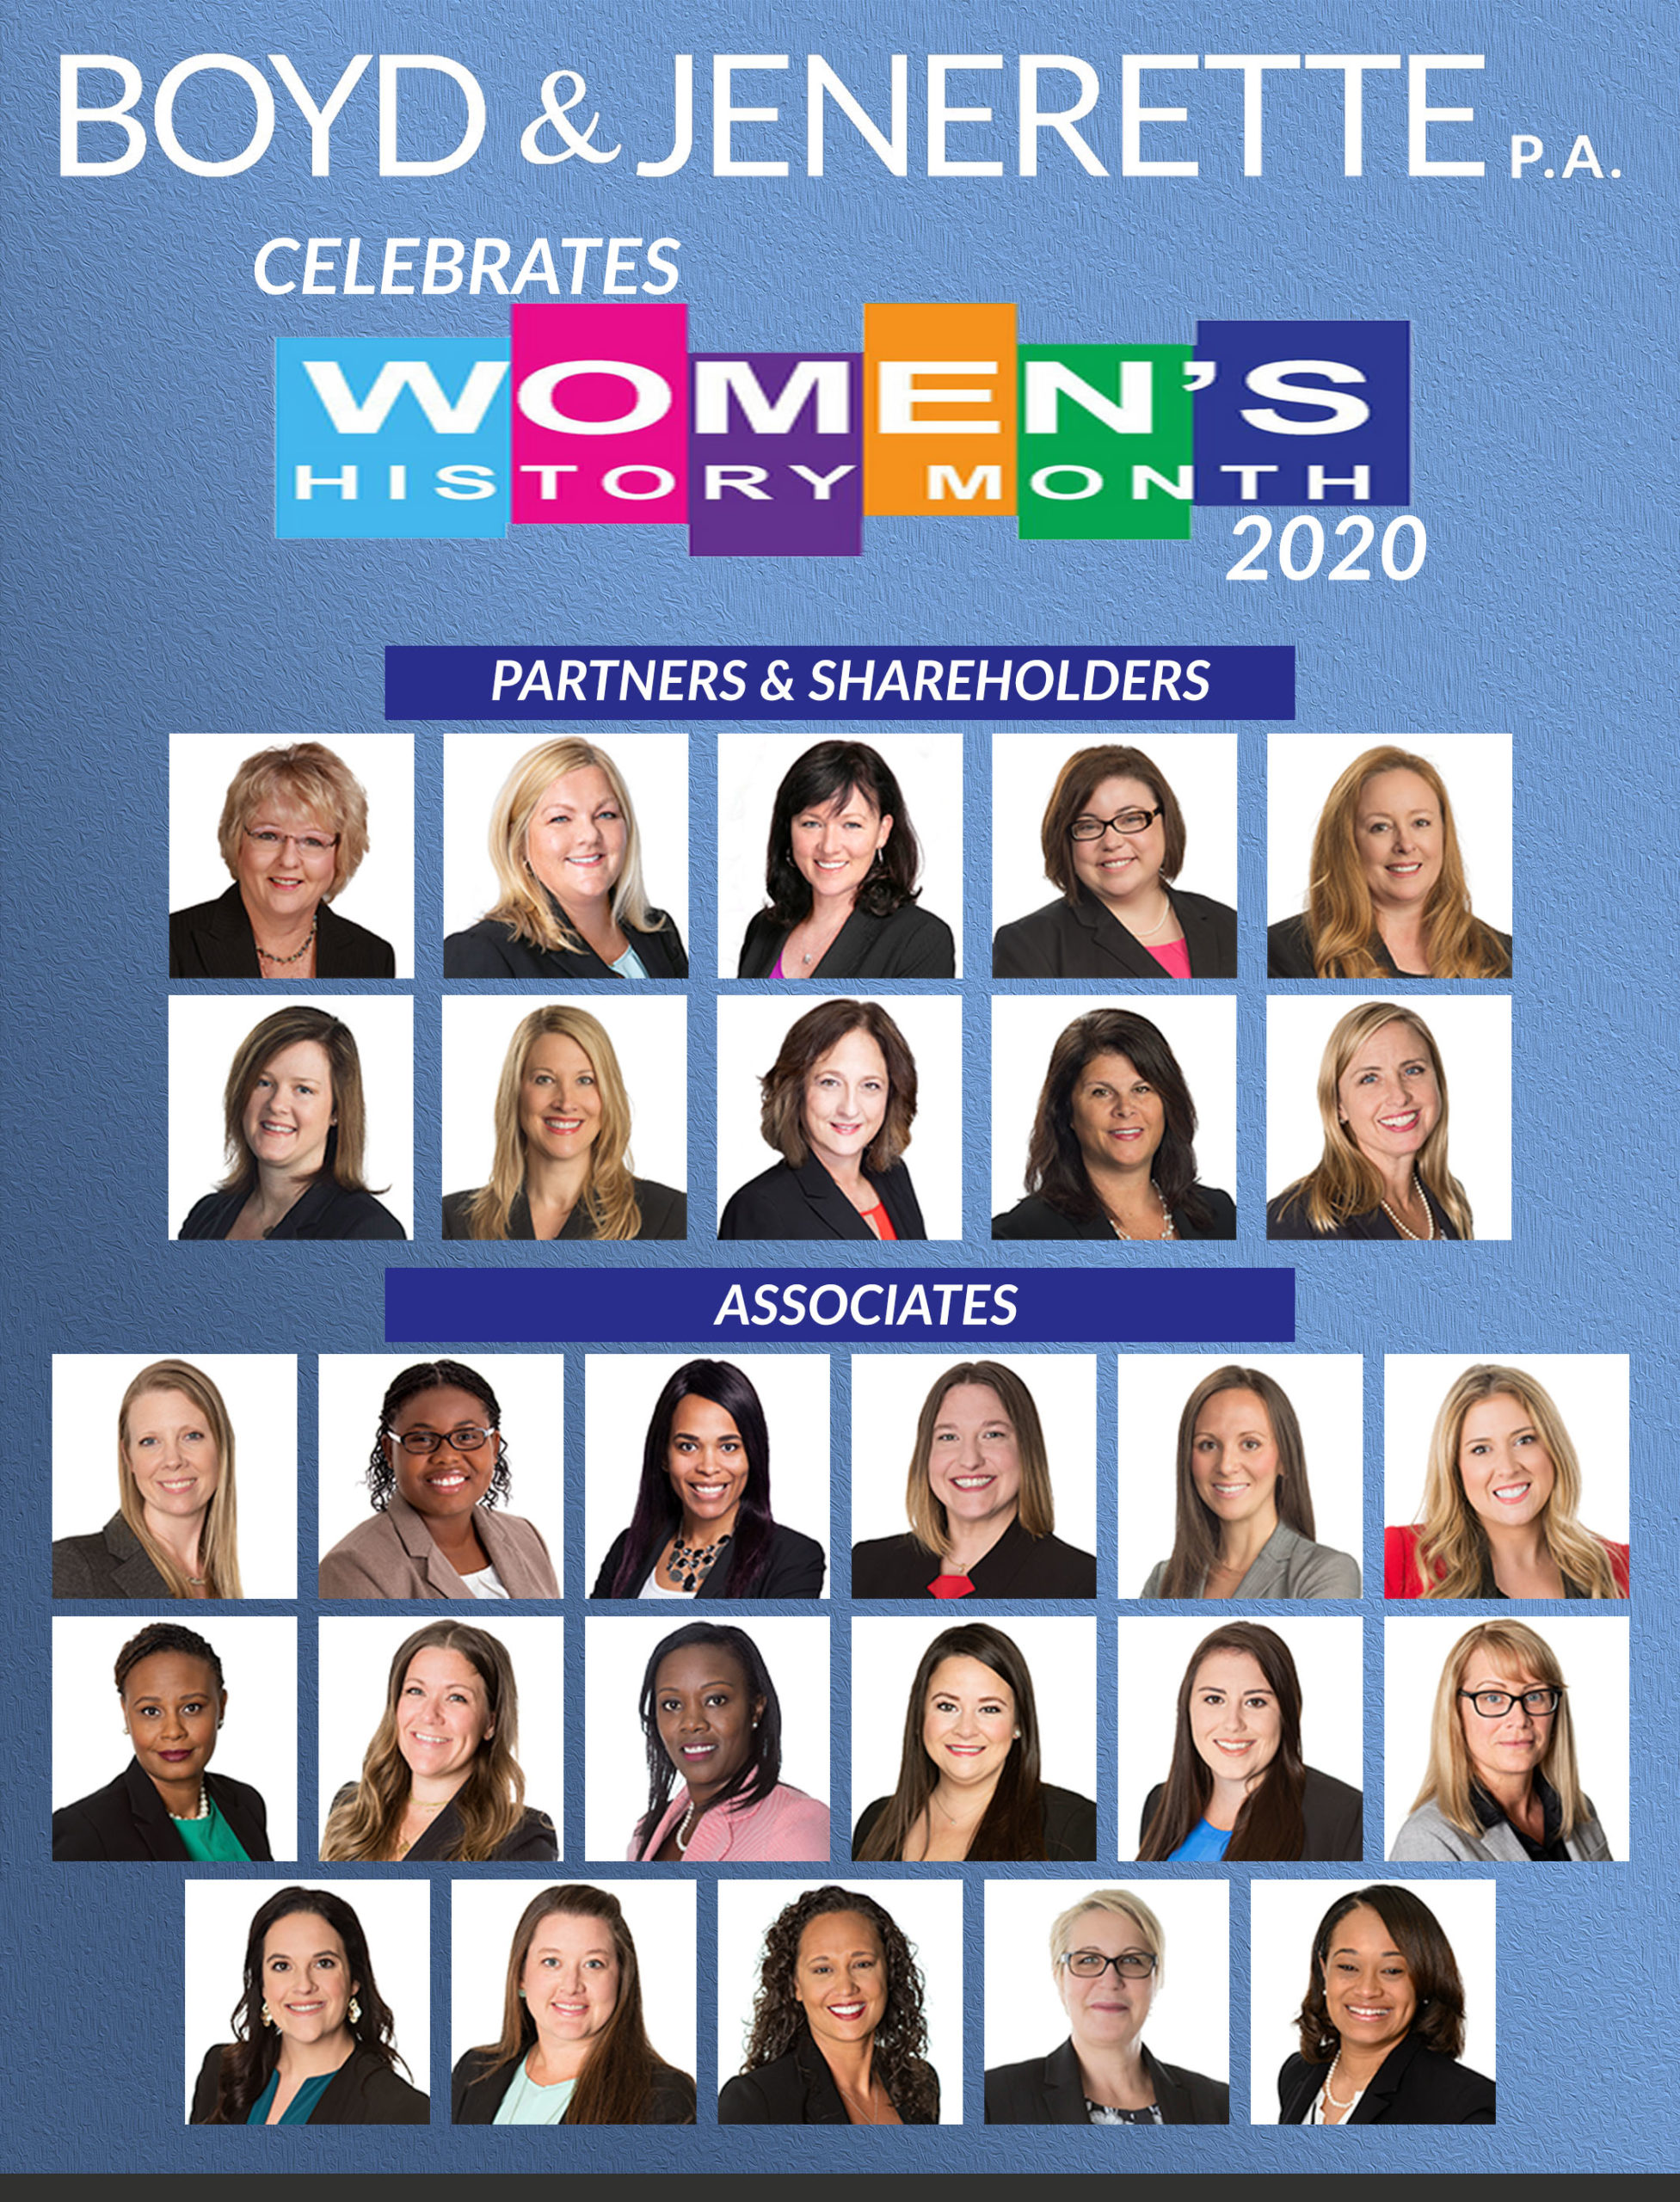 Women's History Month 2020 - Boyd & Jenerette